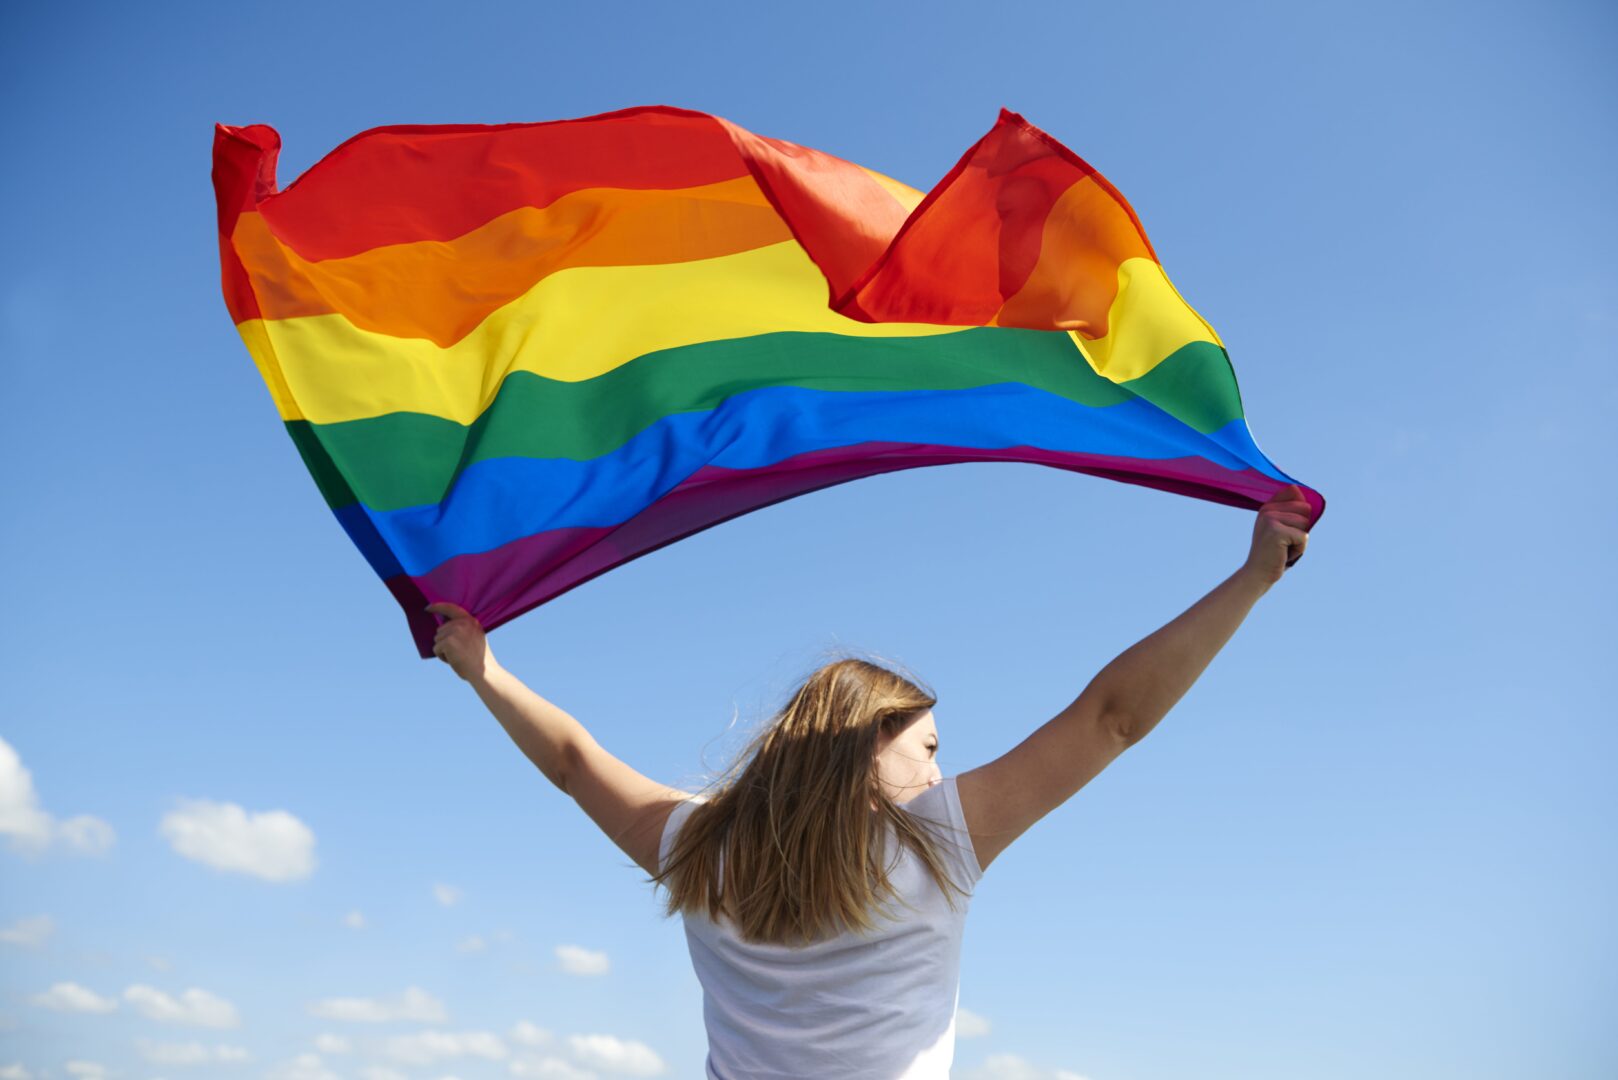 Featured image for “Mês do orgulho LGBTQIAP+: direitos e conquistas do movimento”